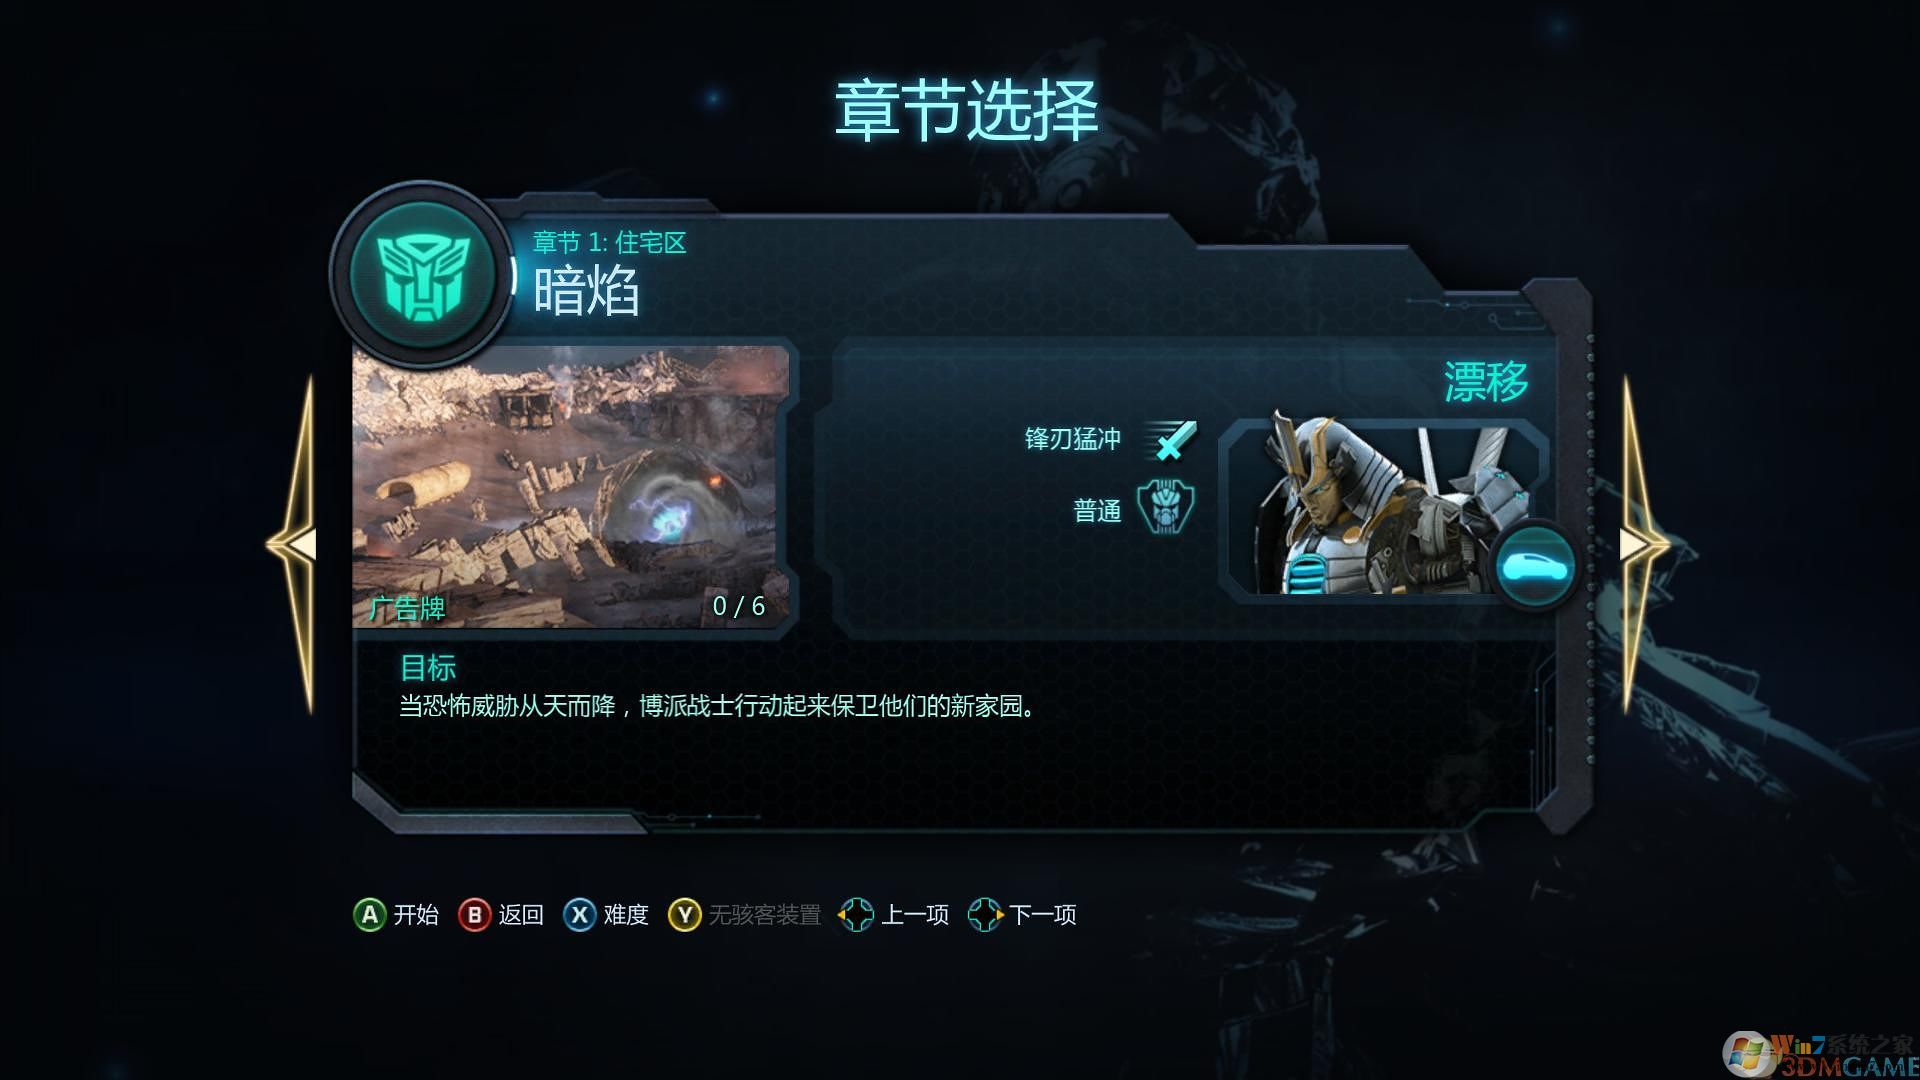 变形金刚:暗焰崛起射击类单机游戏下载 简体中文免安装版